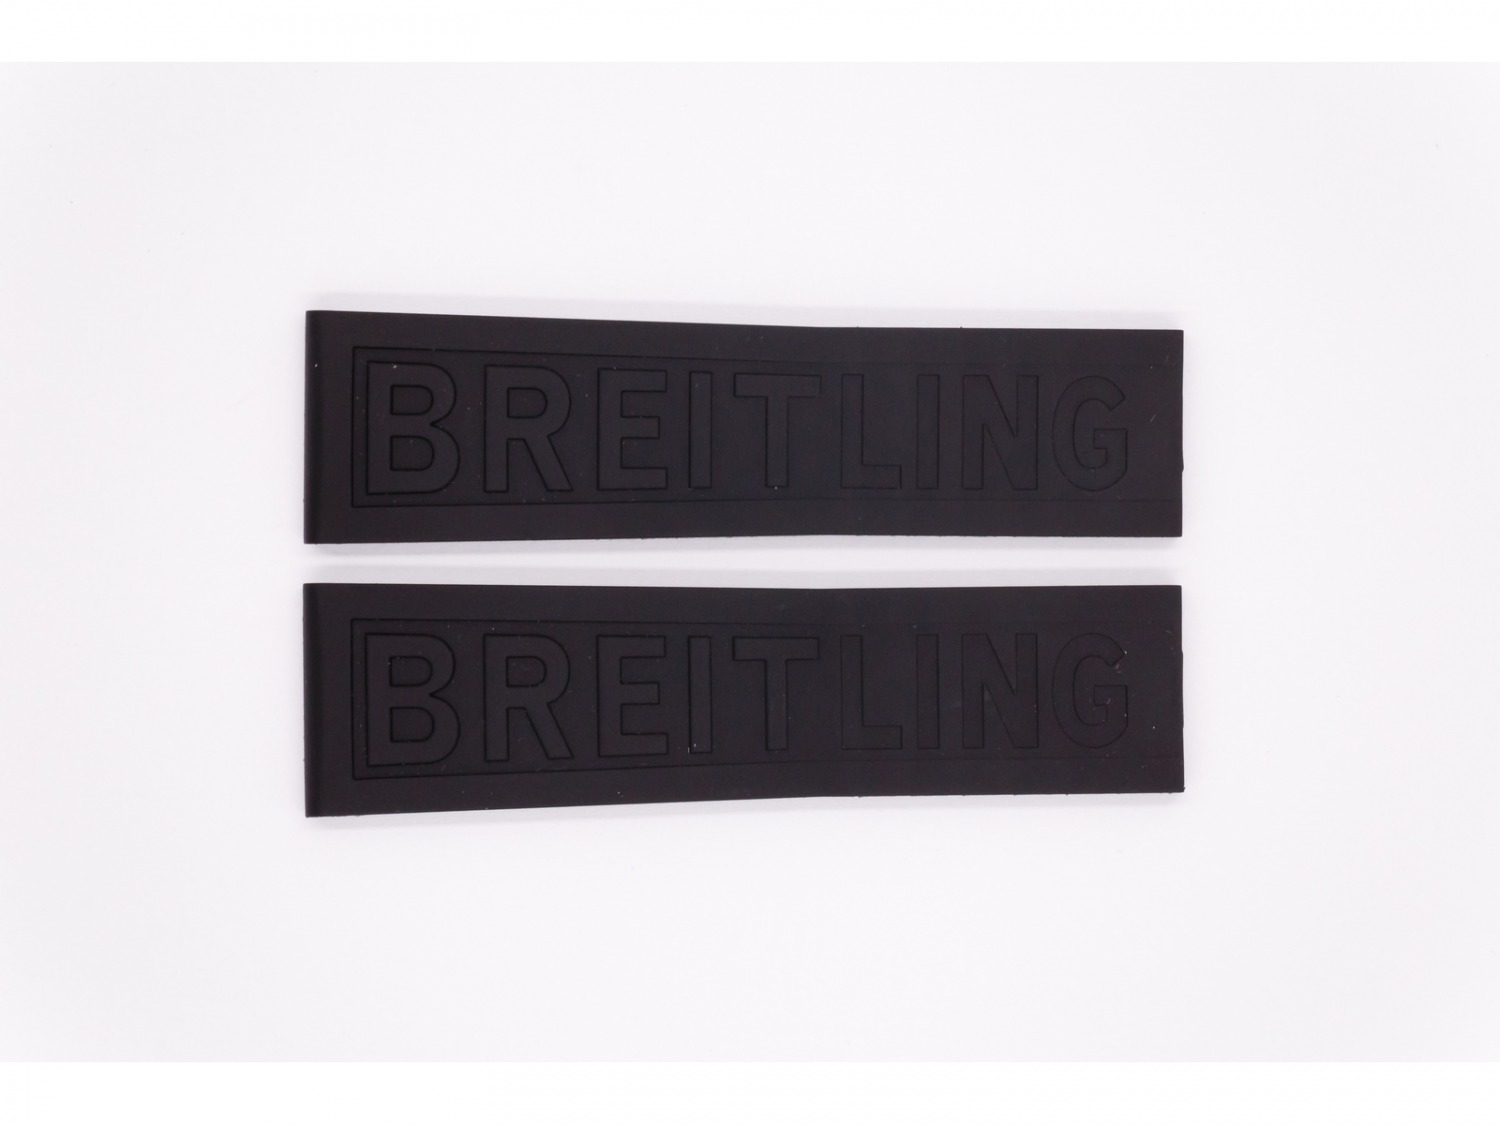 Rubber Breitling Strap, black